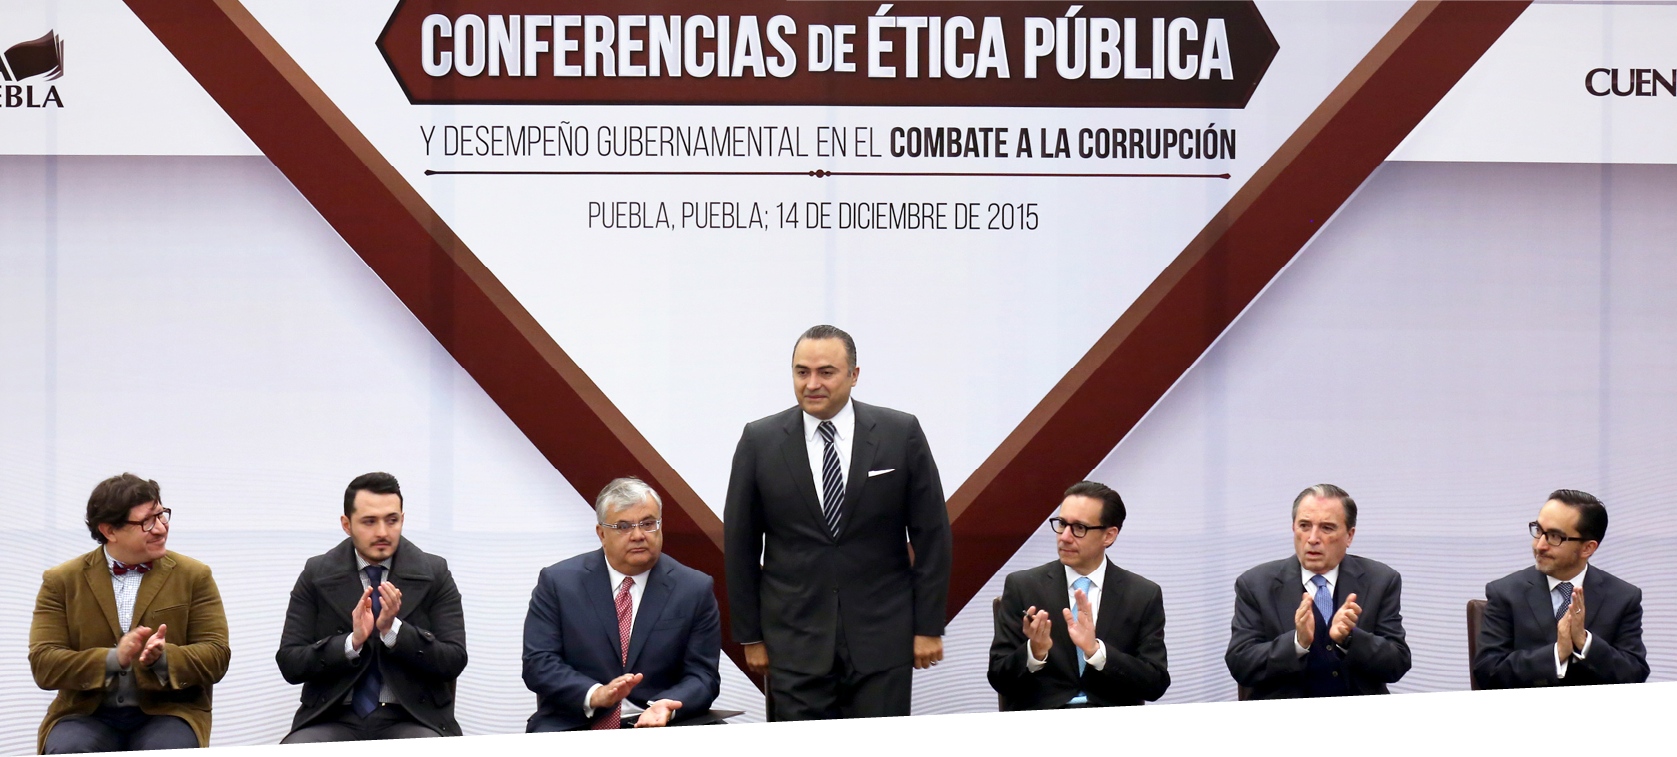 Conferencia de Ética Pública y Desempeño Gubernamental